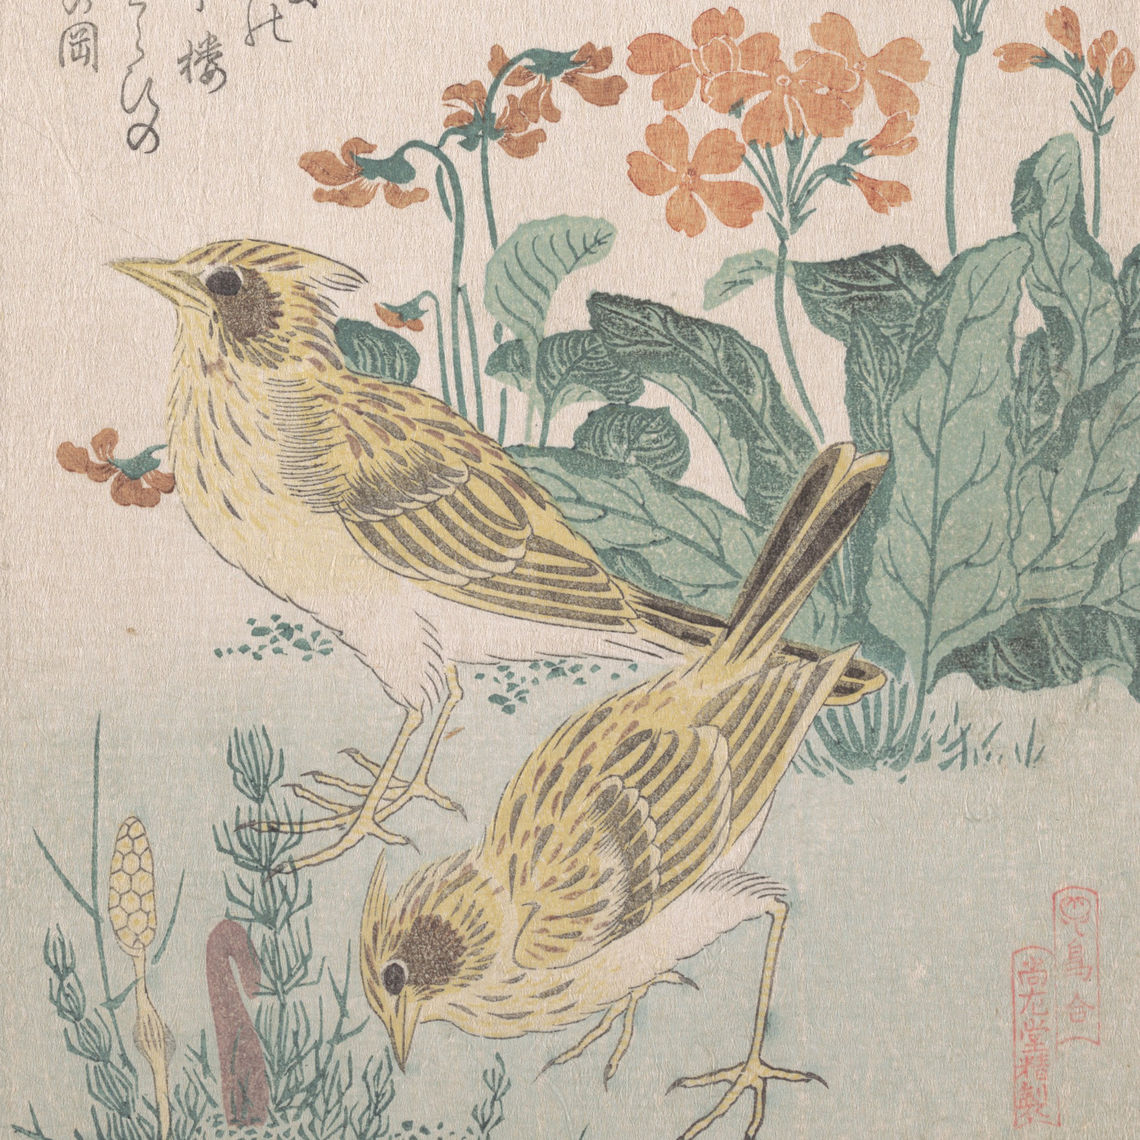 鳥合 桜草に雲雀 skylarks and primroses from the series an array of birds tori awase from spring rain surimono album harusame surimono jo vol 3 19th cen